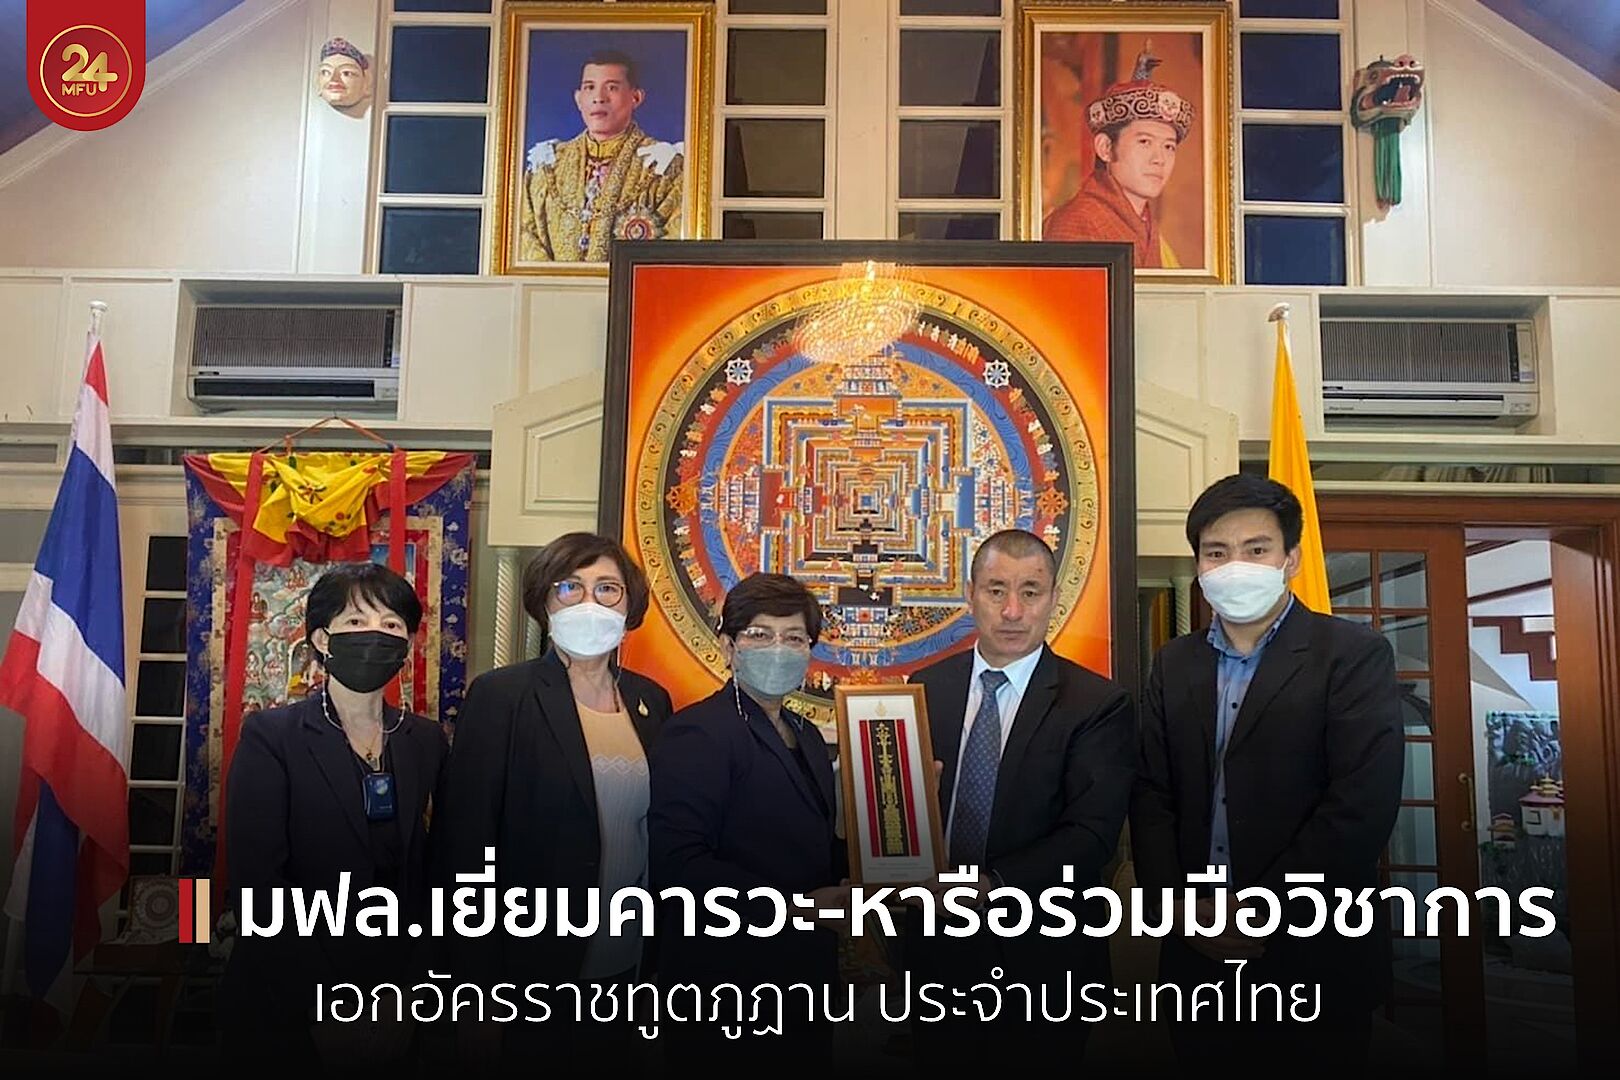 มฟล.เยี่ยมคารวะ-หารือความร่วมมือวิชาการ เอกอัครราชทูตภูฏานประจำประเทศไทย